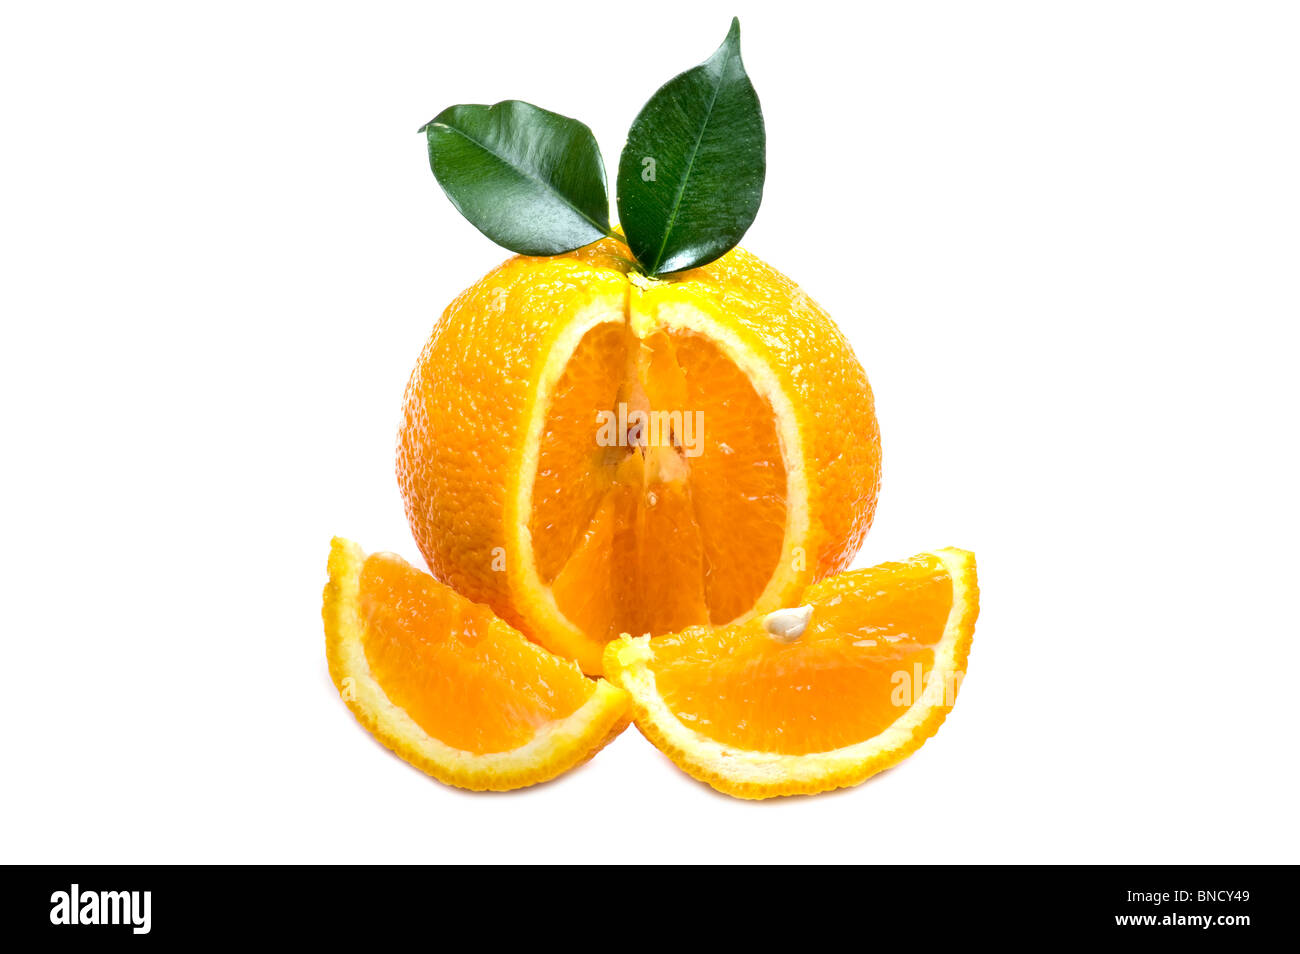 Objet sur blanc - alimentaire orange close up Banque D'Images